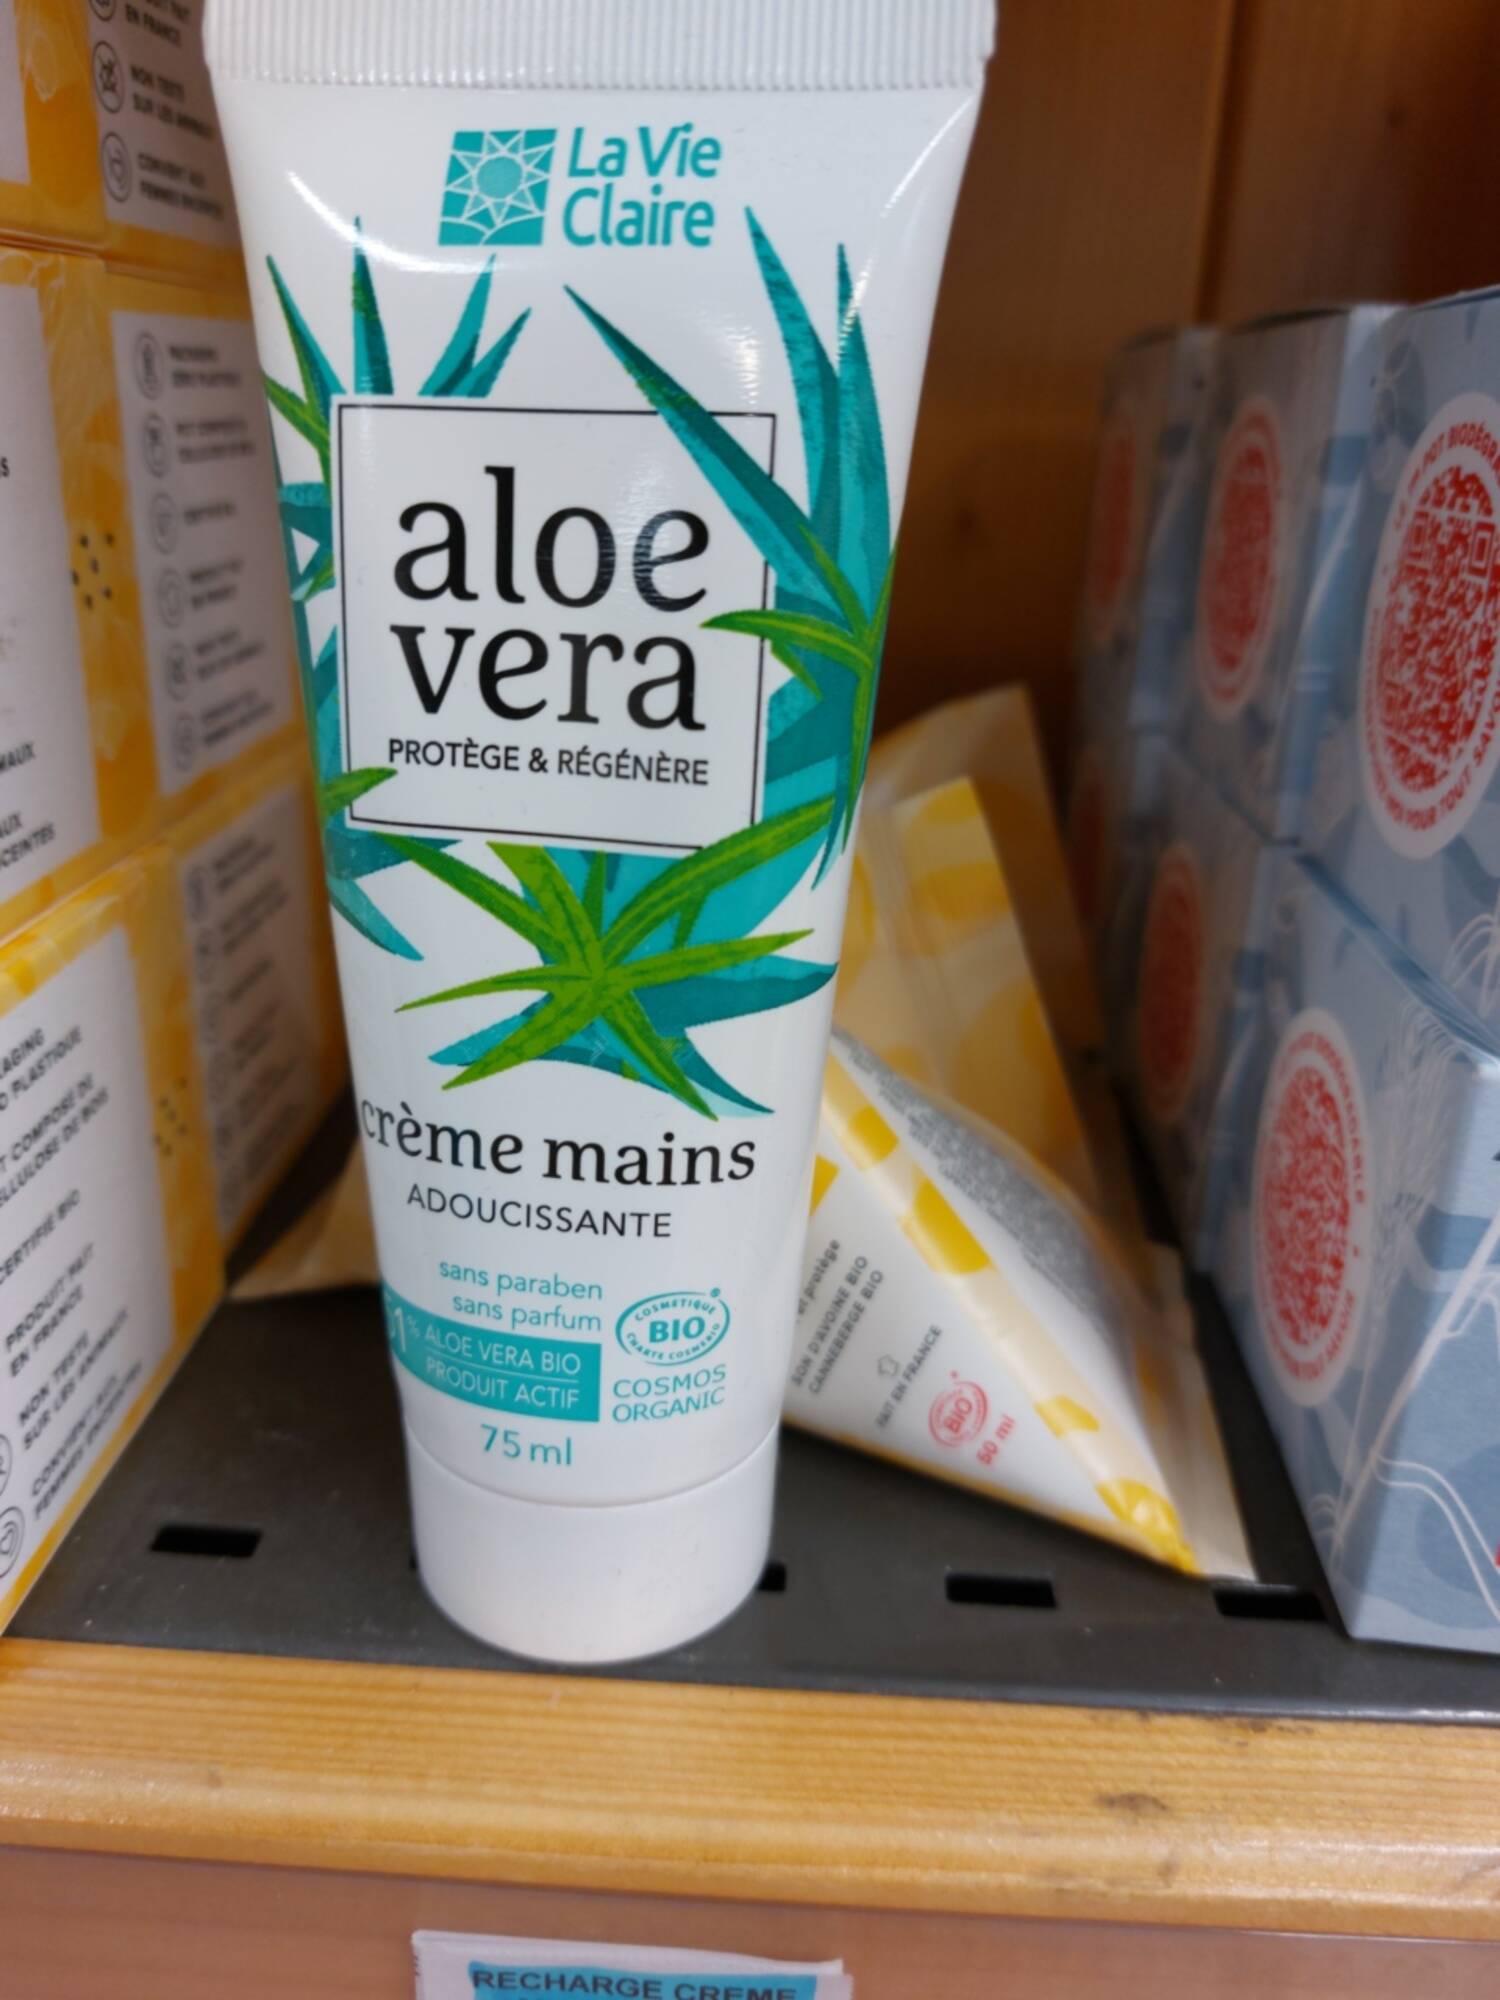 LA VIE CLAIRE - Aloe vera - Crème mains adoucissante